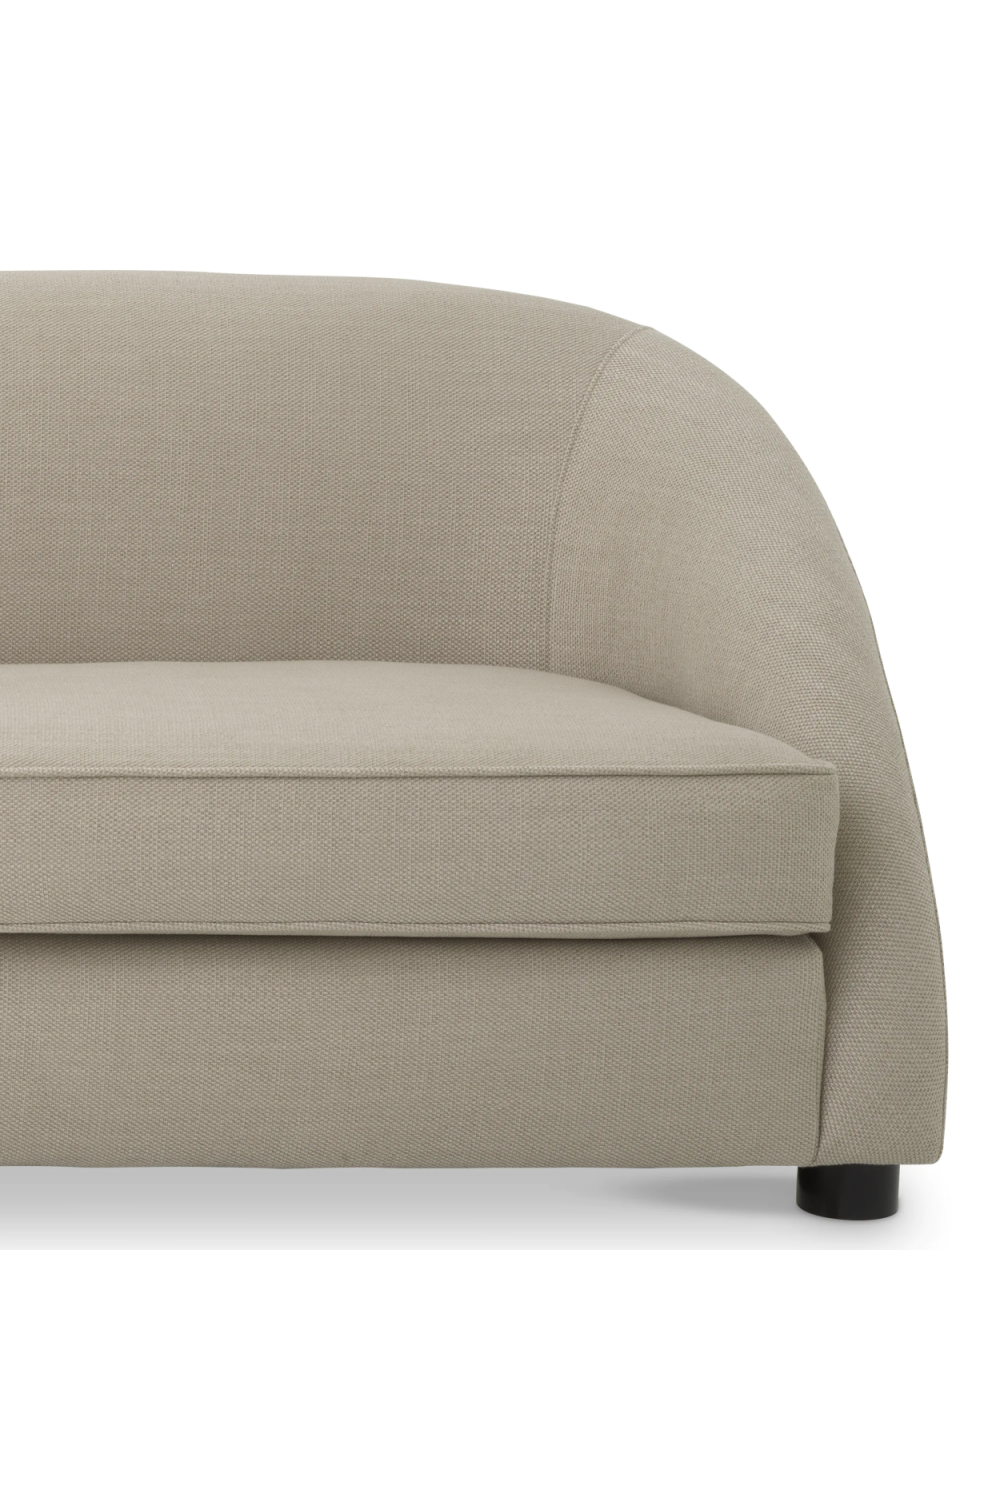 Modern Contoured Sofa | Eichholtz Cruz | Oroa.com